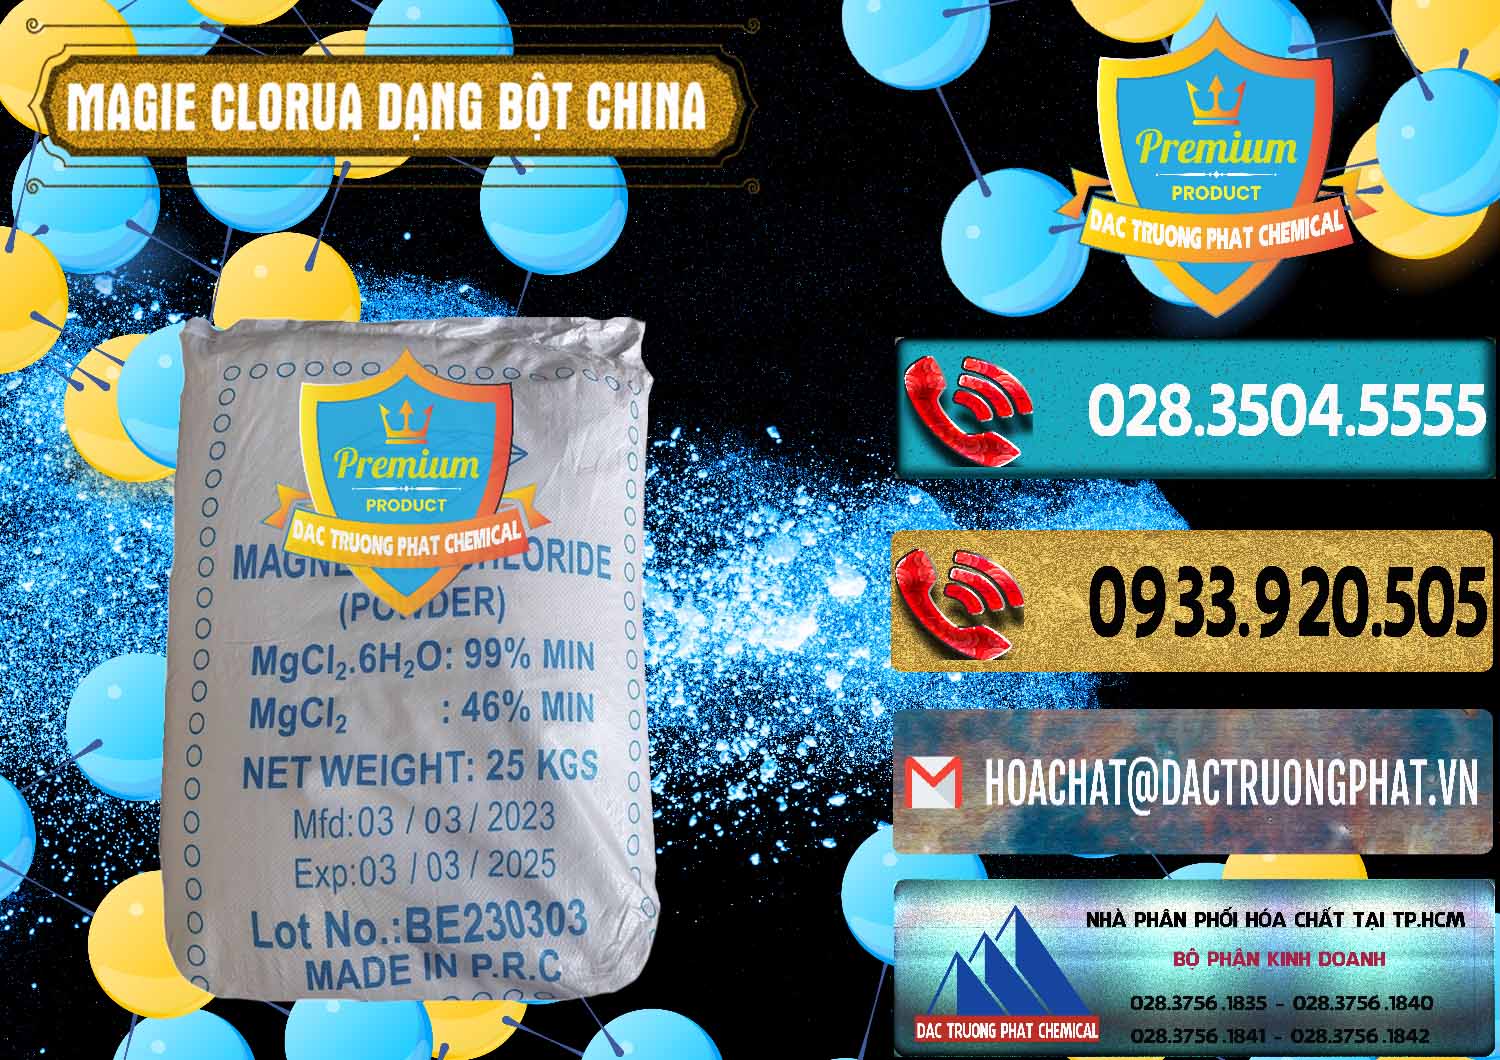 Cty chuyên bán _ cung ứng Magie Clorua – MGCL2 96% Dạng Bột Logo Kim Cương Trung Quốc China - 0387 - Chuyên bán - phân phối hóa chất tại TP.HCM - hoachatdetnhuom.com